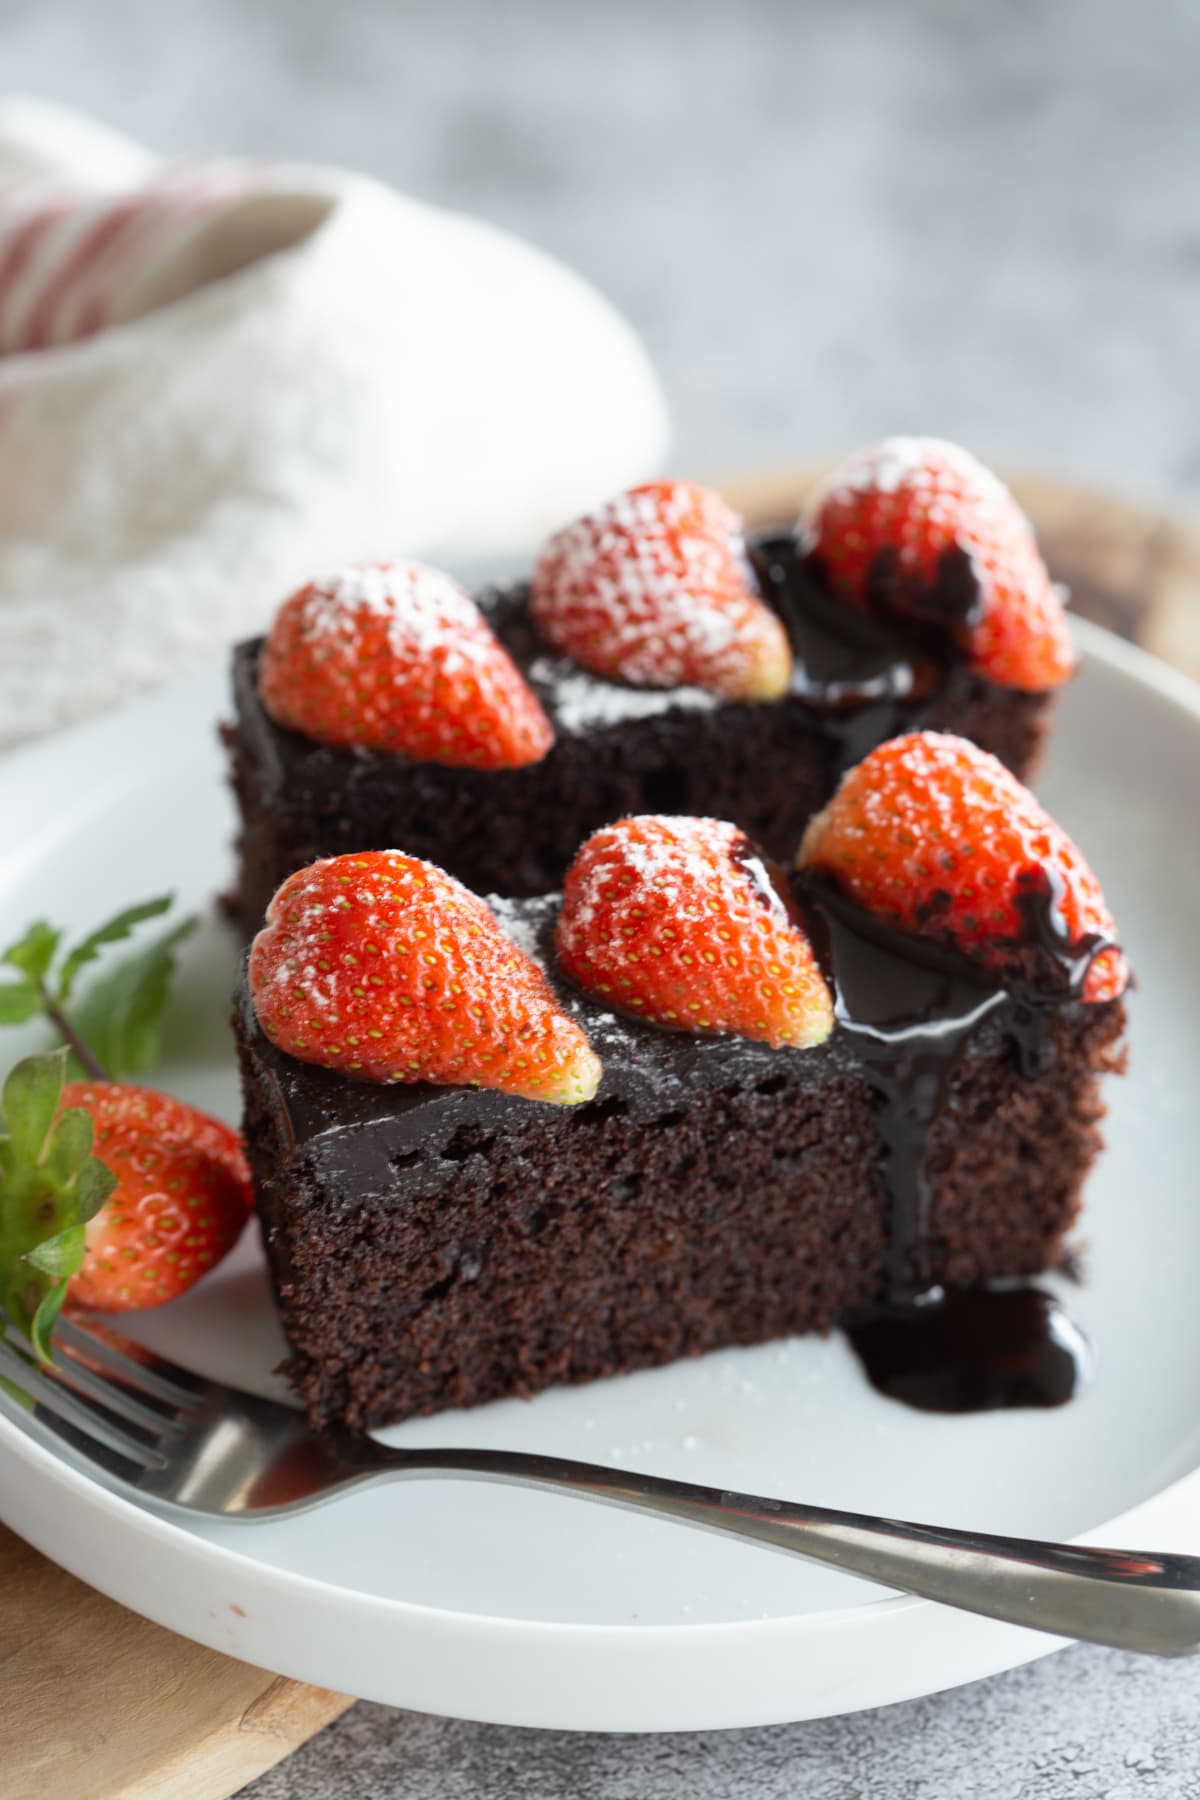 Chocolate cake with ganache and strawberries.